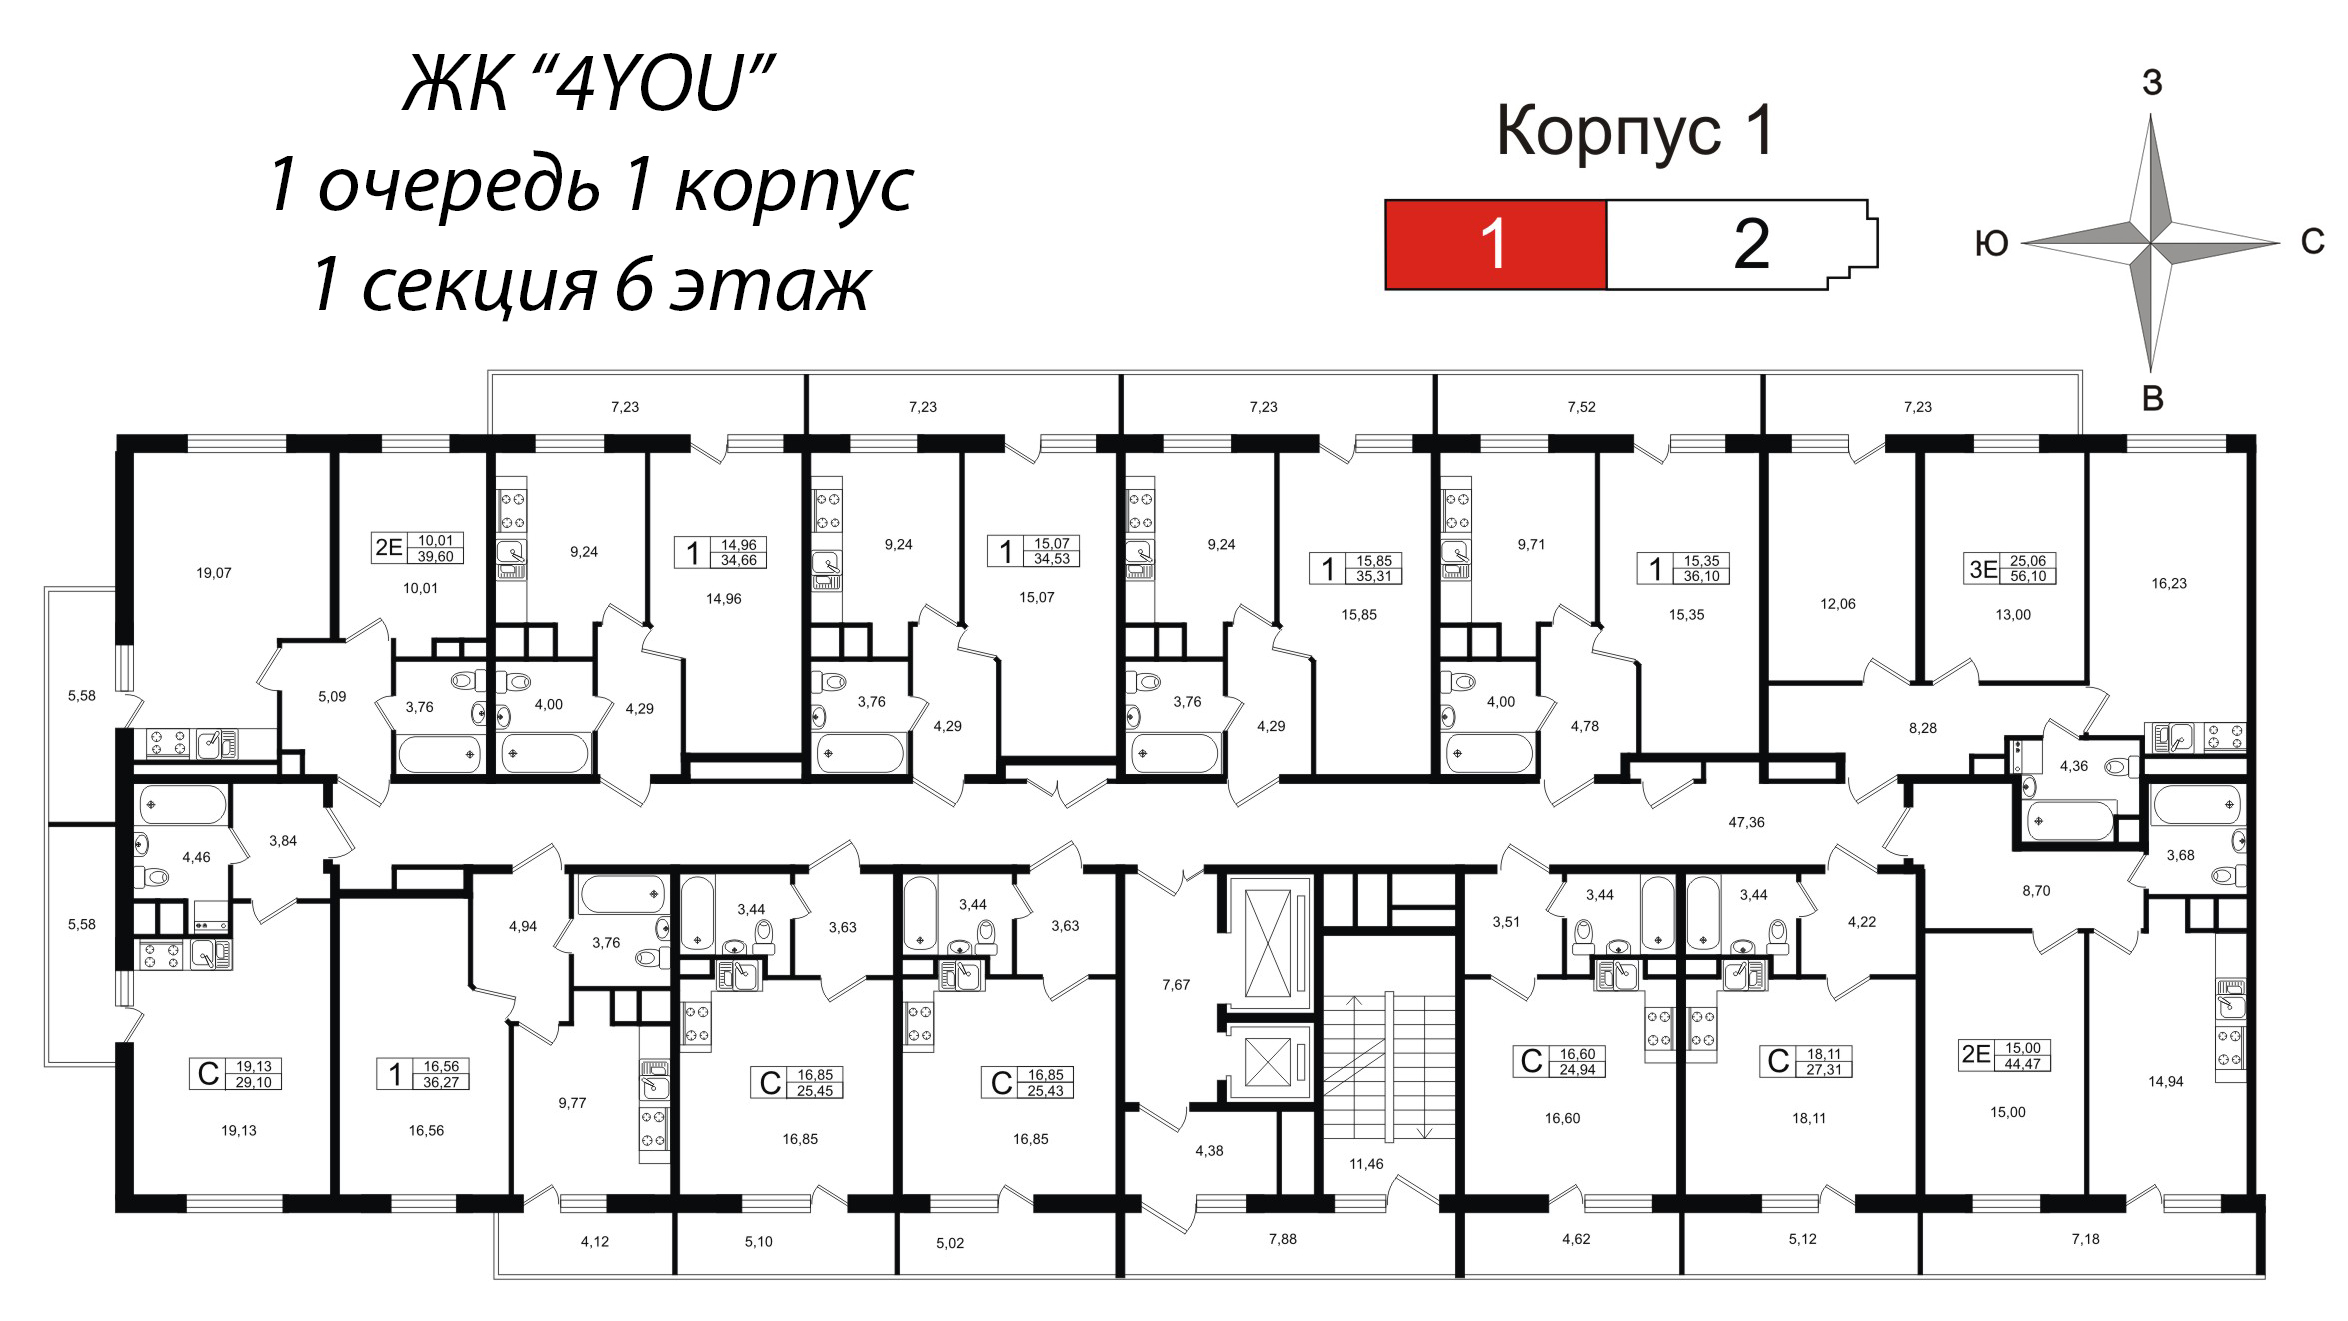 Квартира-студия, 25.3 м² в ЖК "4YOU" - планировка этажа